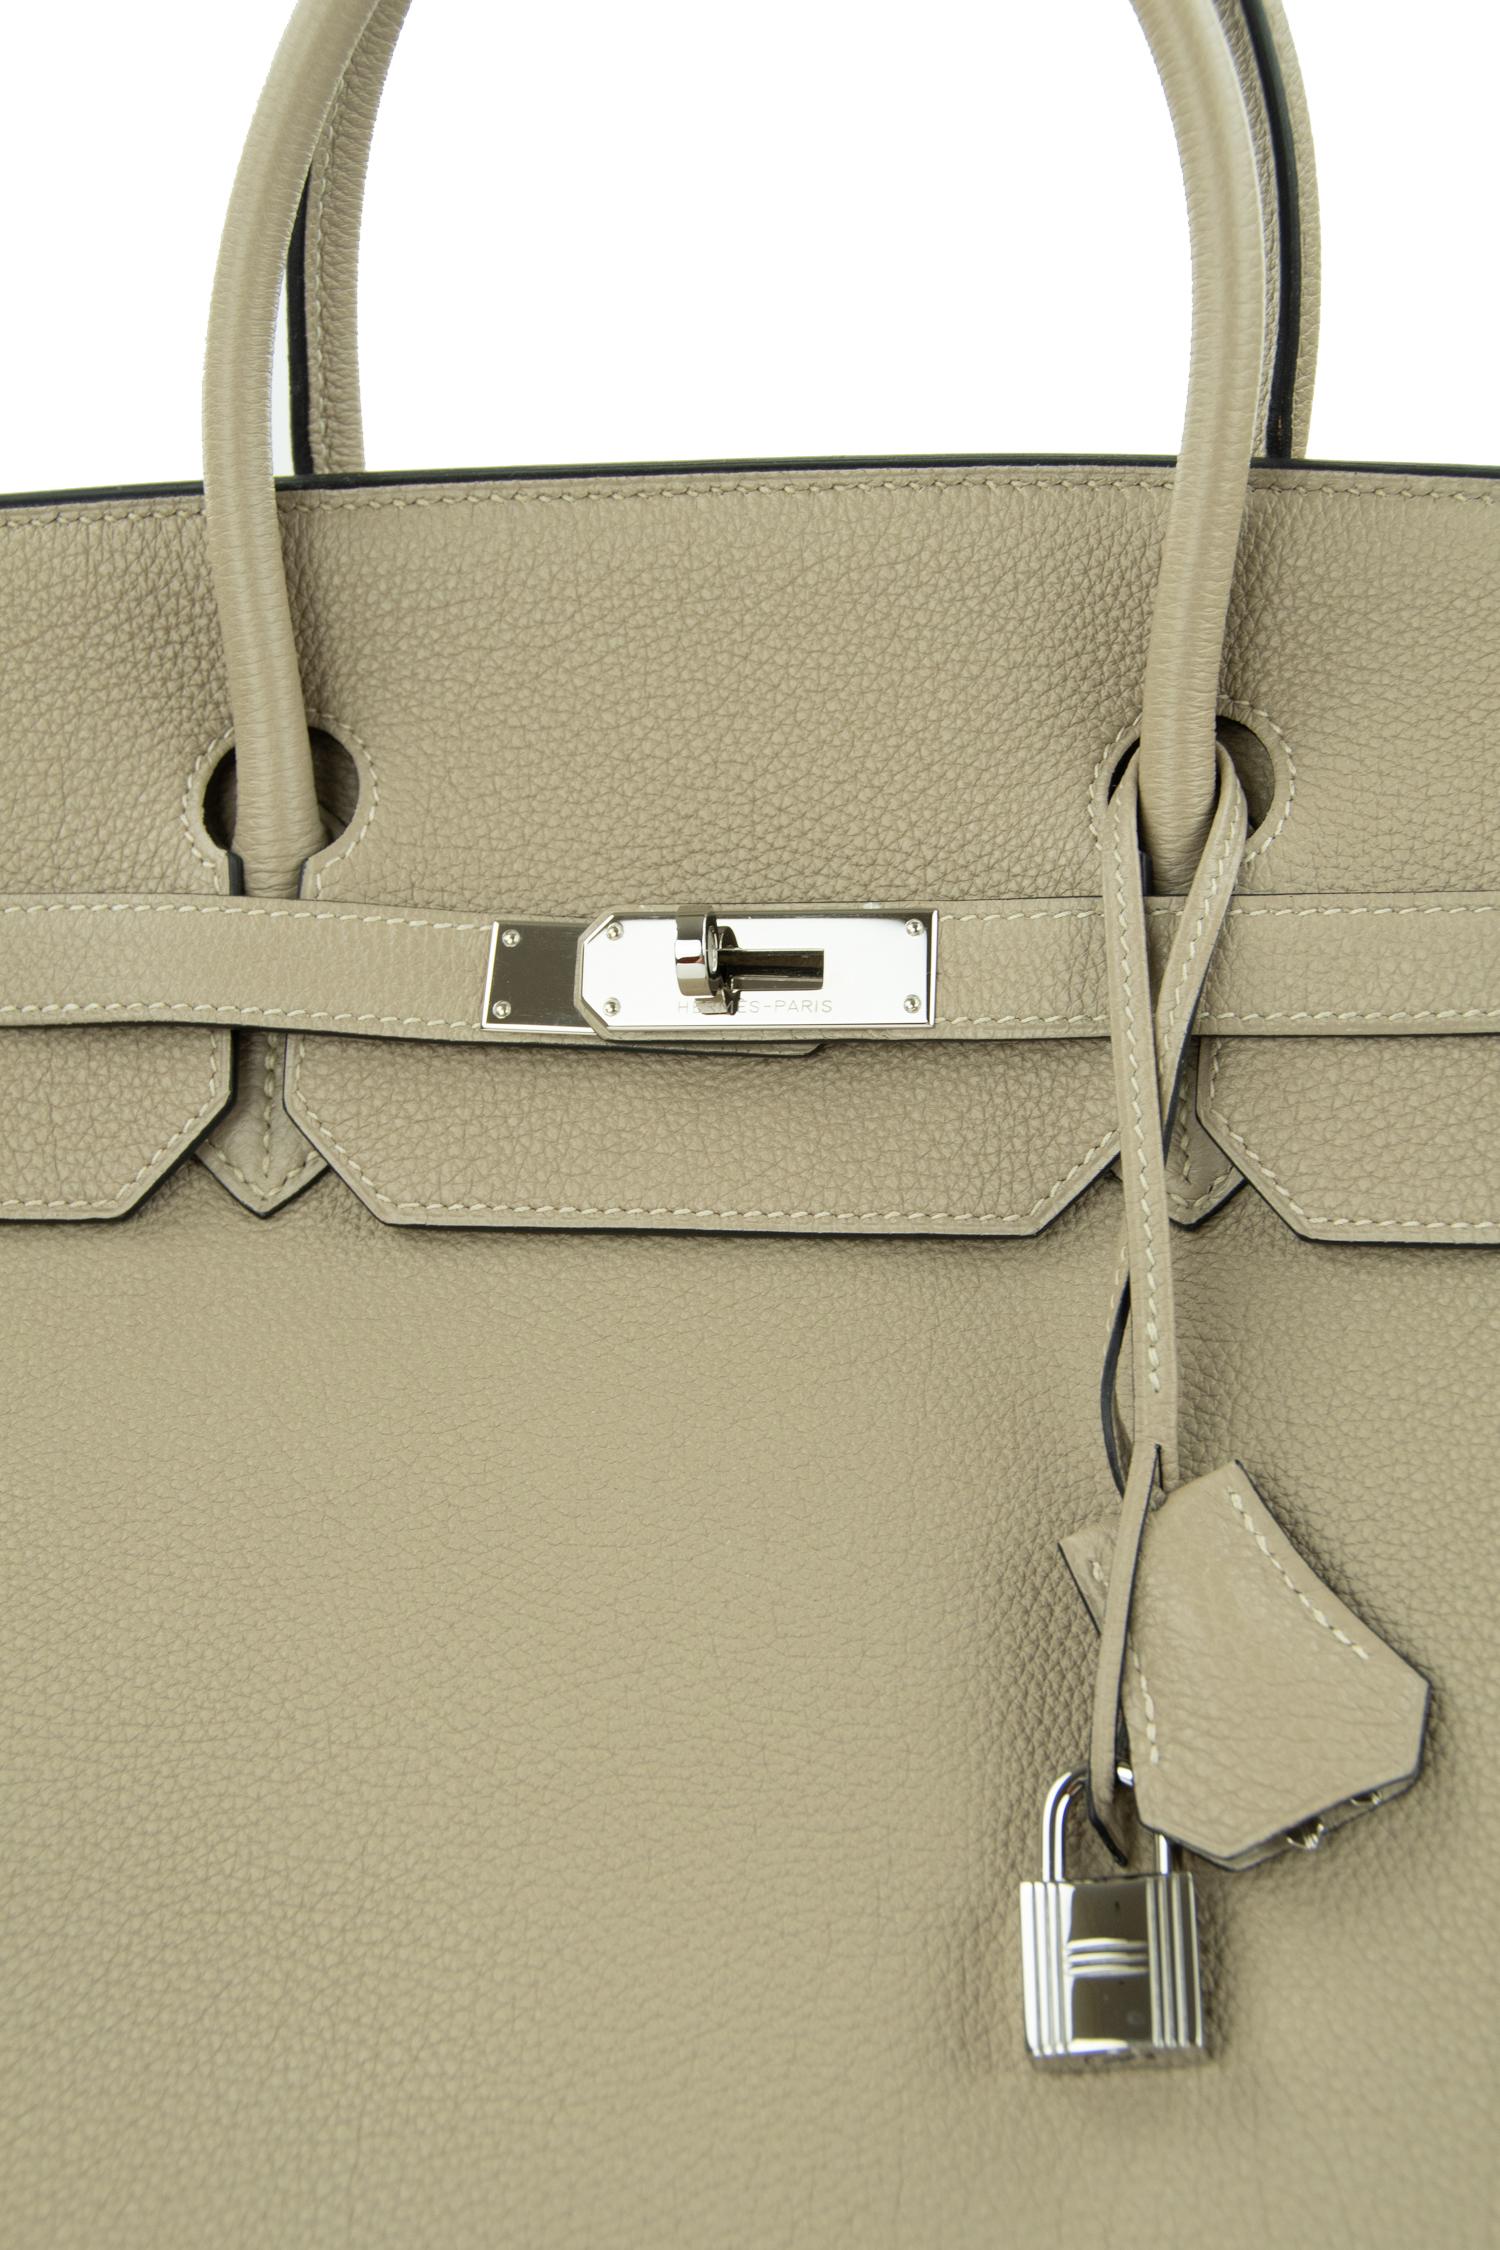 Women's or Men's Hermes Birkin Bag 40cm Gris Tourterelle Togo PHW For Sale